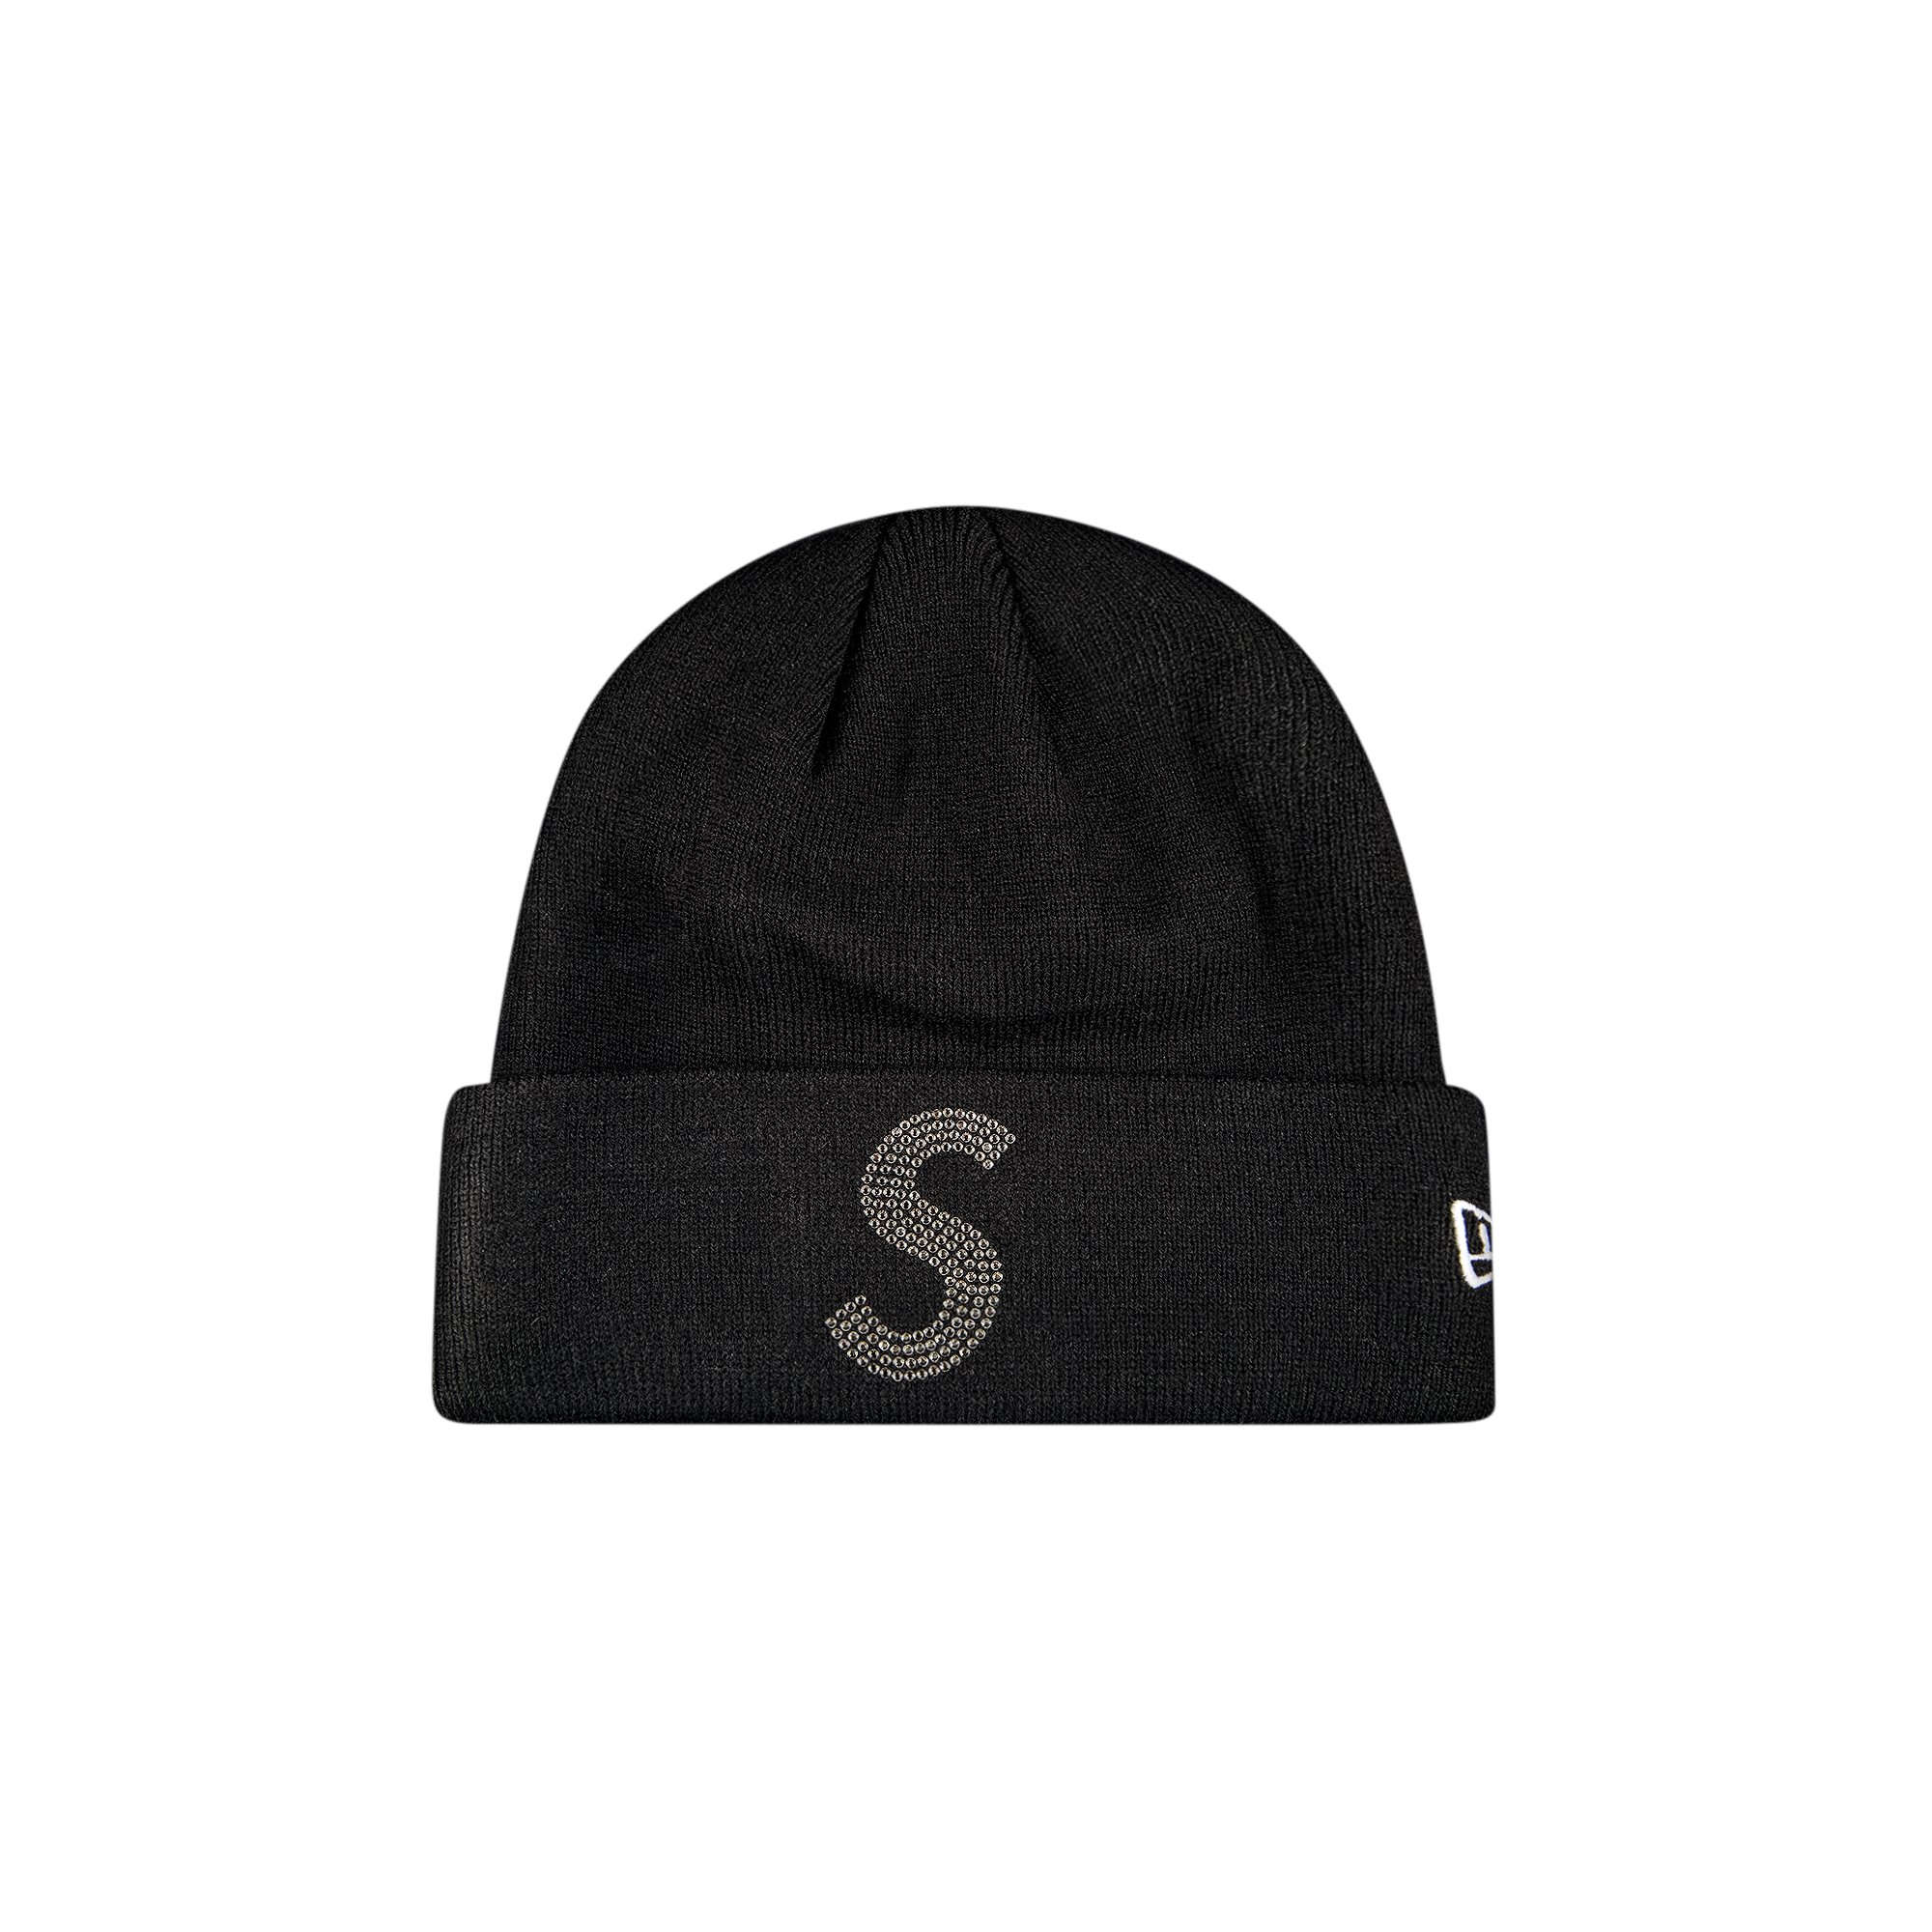 Supreme x New Era x Swarovski S Logo Beanie 'Black'